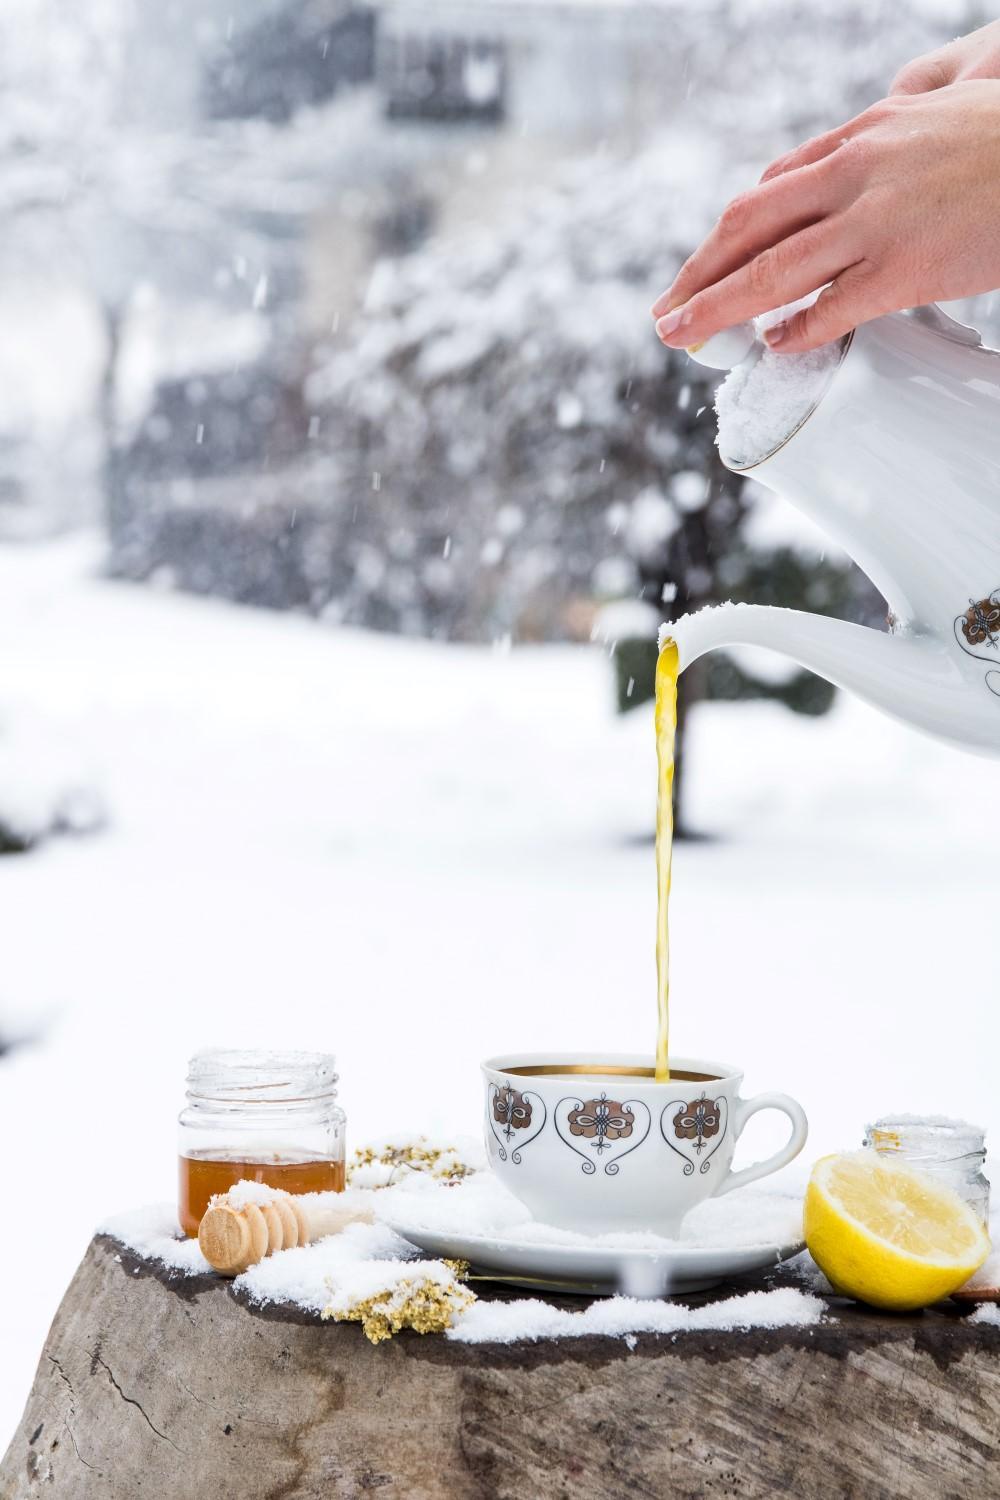 Use Your Noodles - Immune-Boosting Elderflower Turmeric Tea